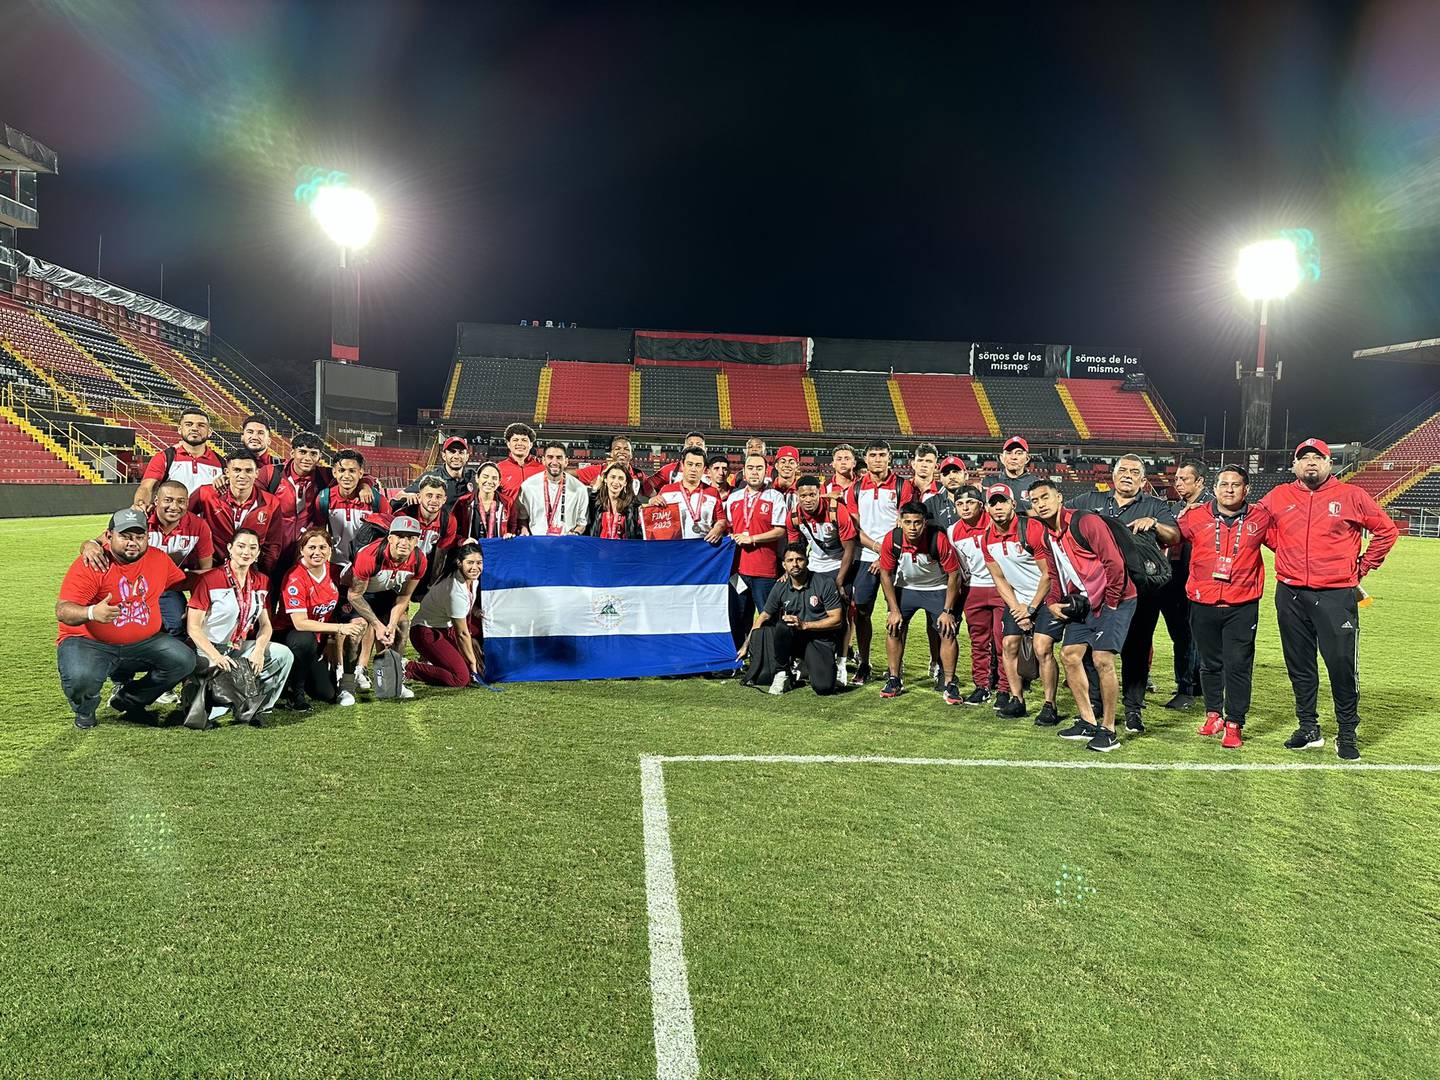 El Real Estelí fue un digno rival en la final de la Copa Centroamericana de Concacaf y regresa a casa con la frente en alto, luego de hacerle un buen juego a Liga Deportiva Alajuelense en el Estadio Alejandro Morera Soto.